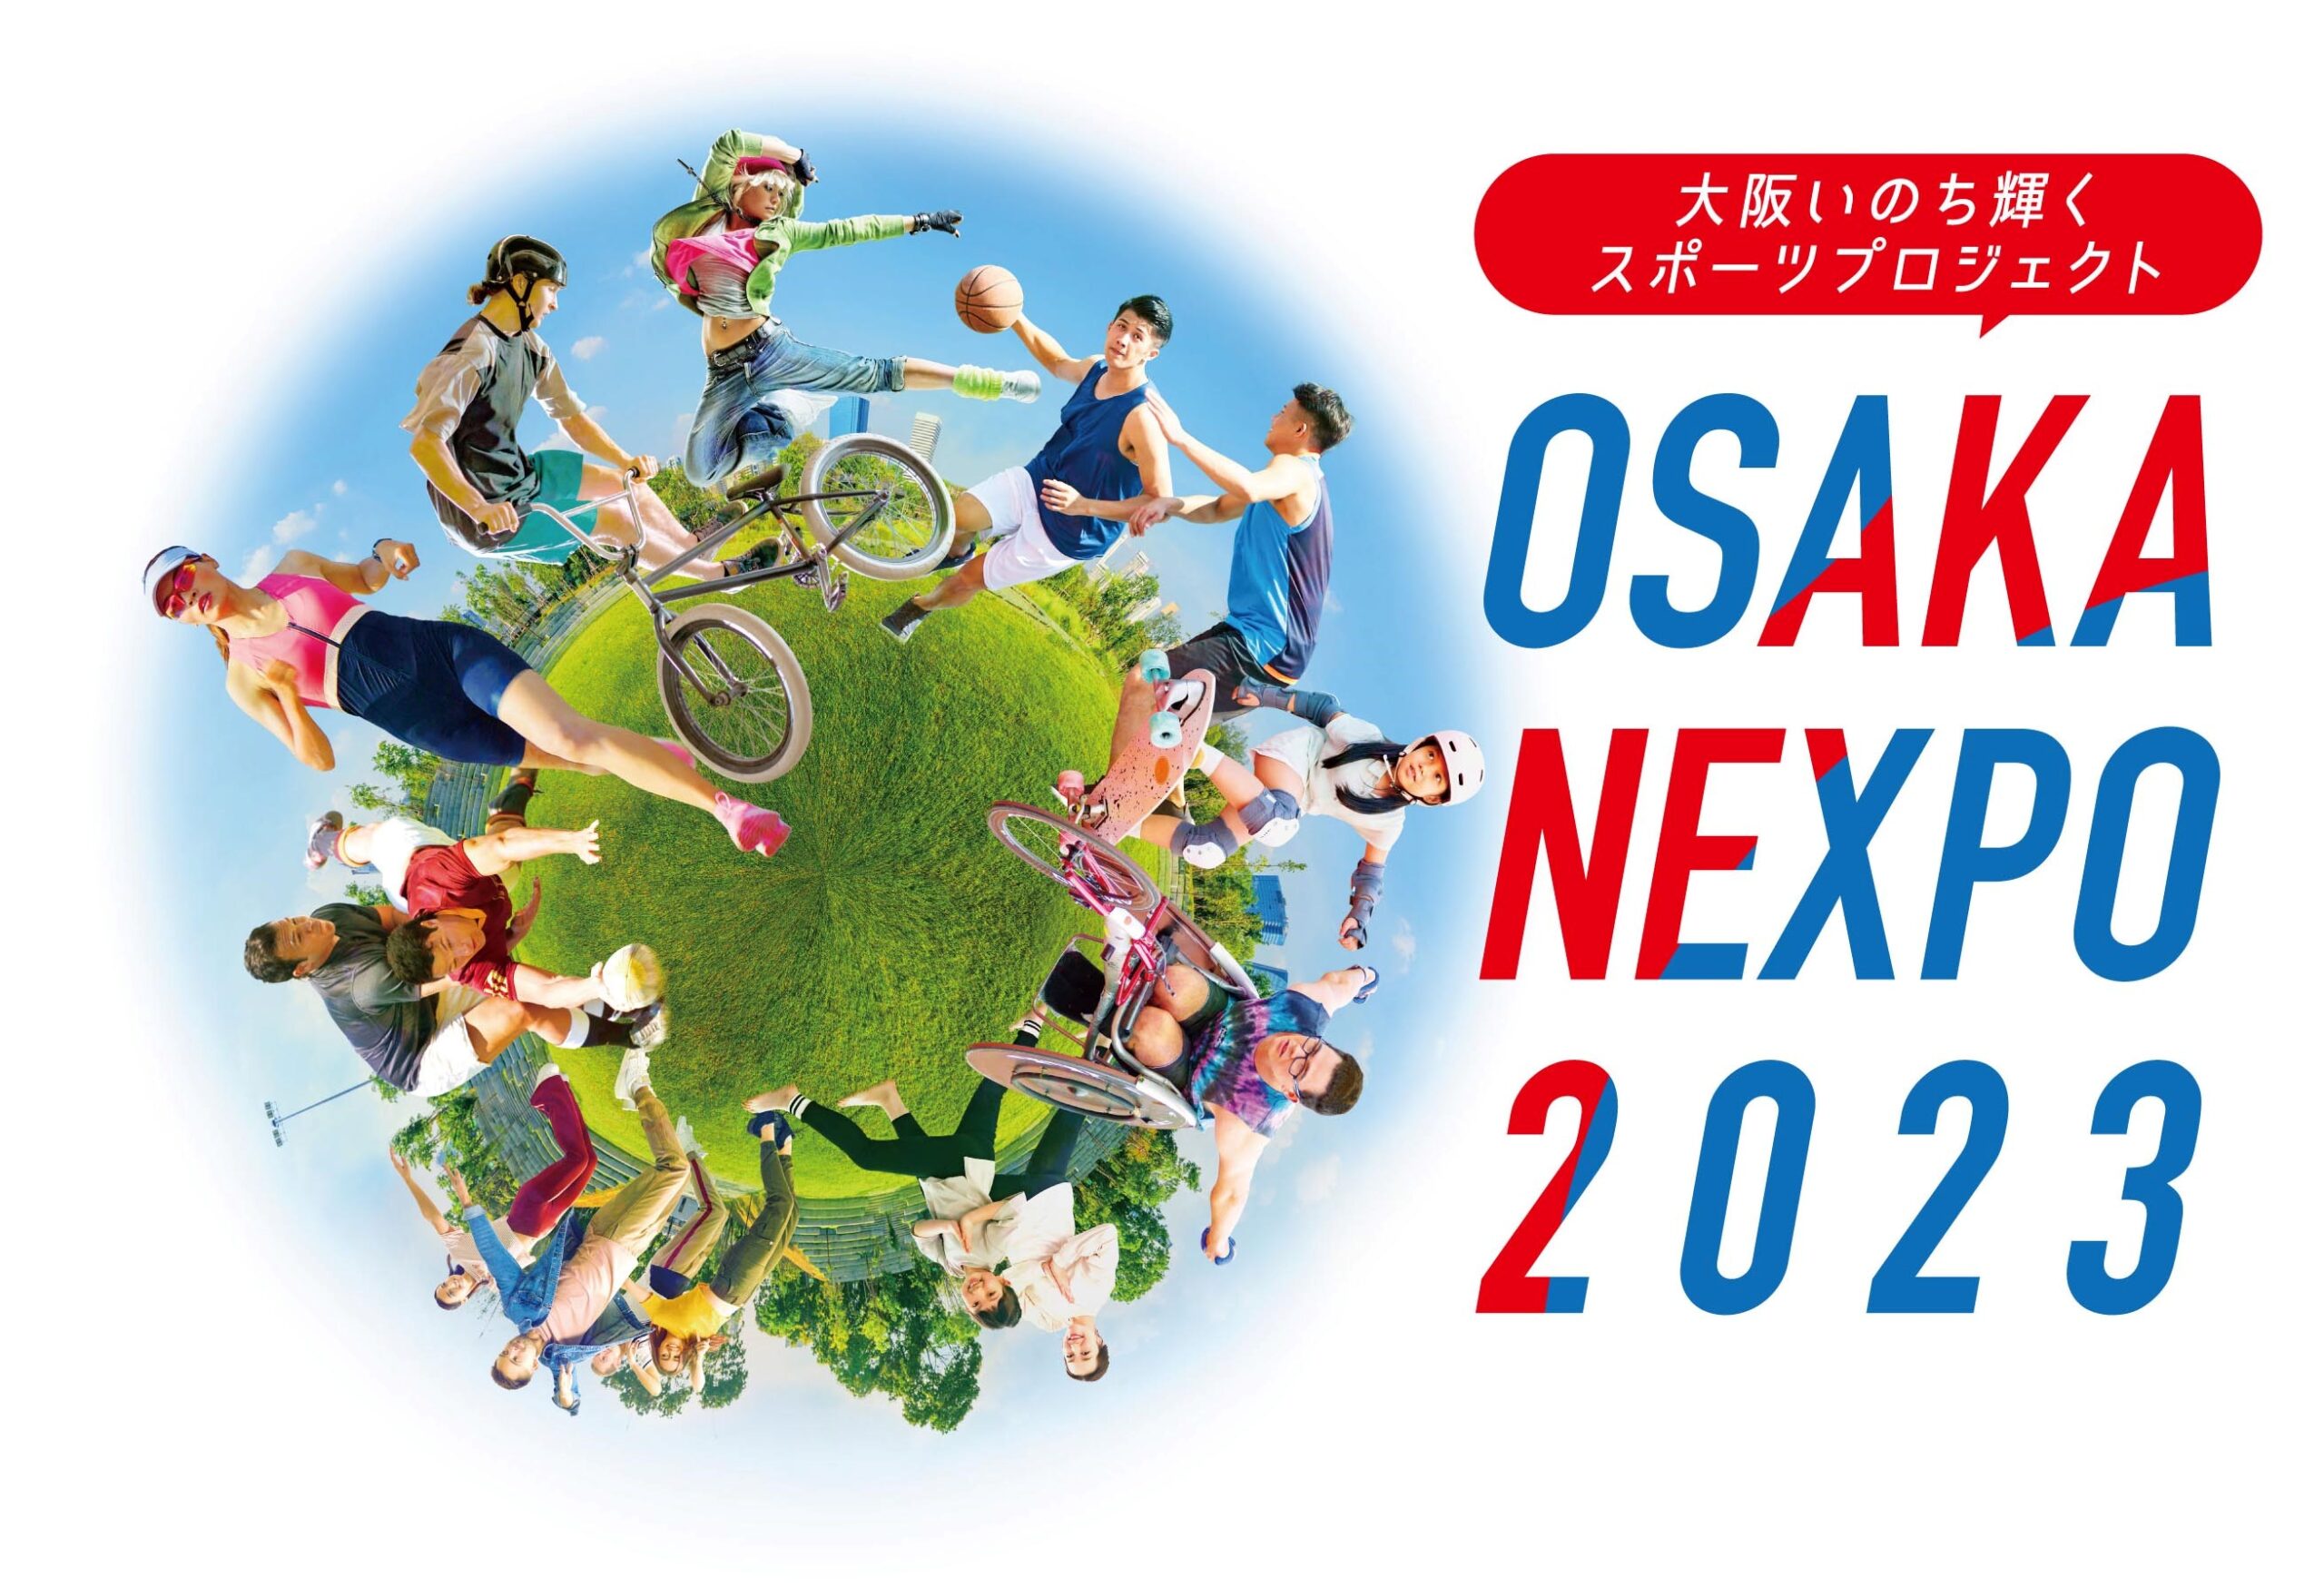 大阪いのち輝くスポーツプロジェクト「おおさかネクスポ2023　おでかけネクスポ」を開催します